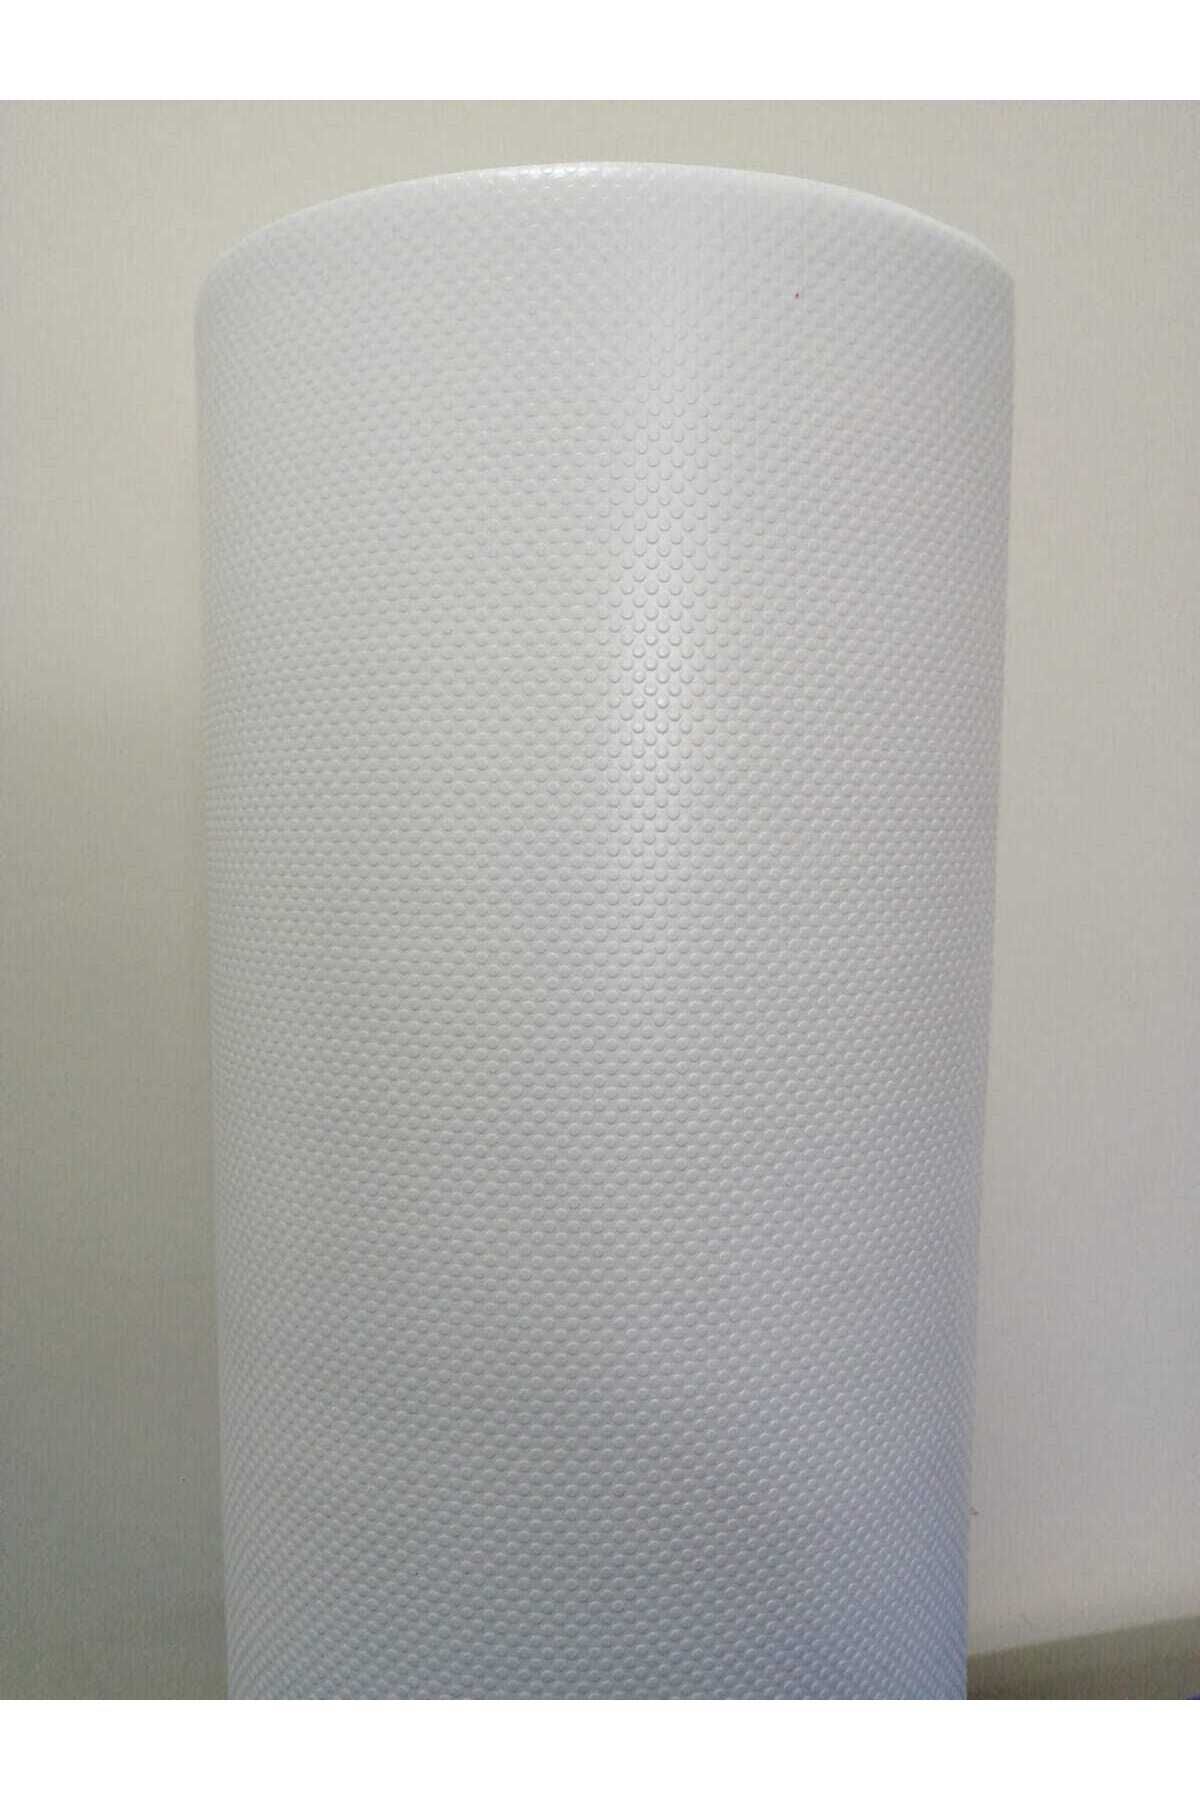 ALMITAL 48 Cm X 5 Metre Beyaz Kabartma Nokta Desenli Çekmece Içi Kaydırmaz Halı , Çekmece Halısı